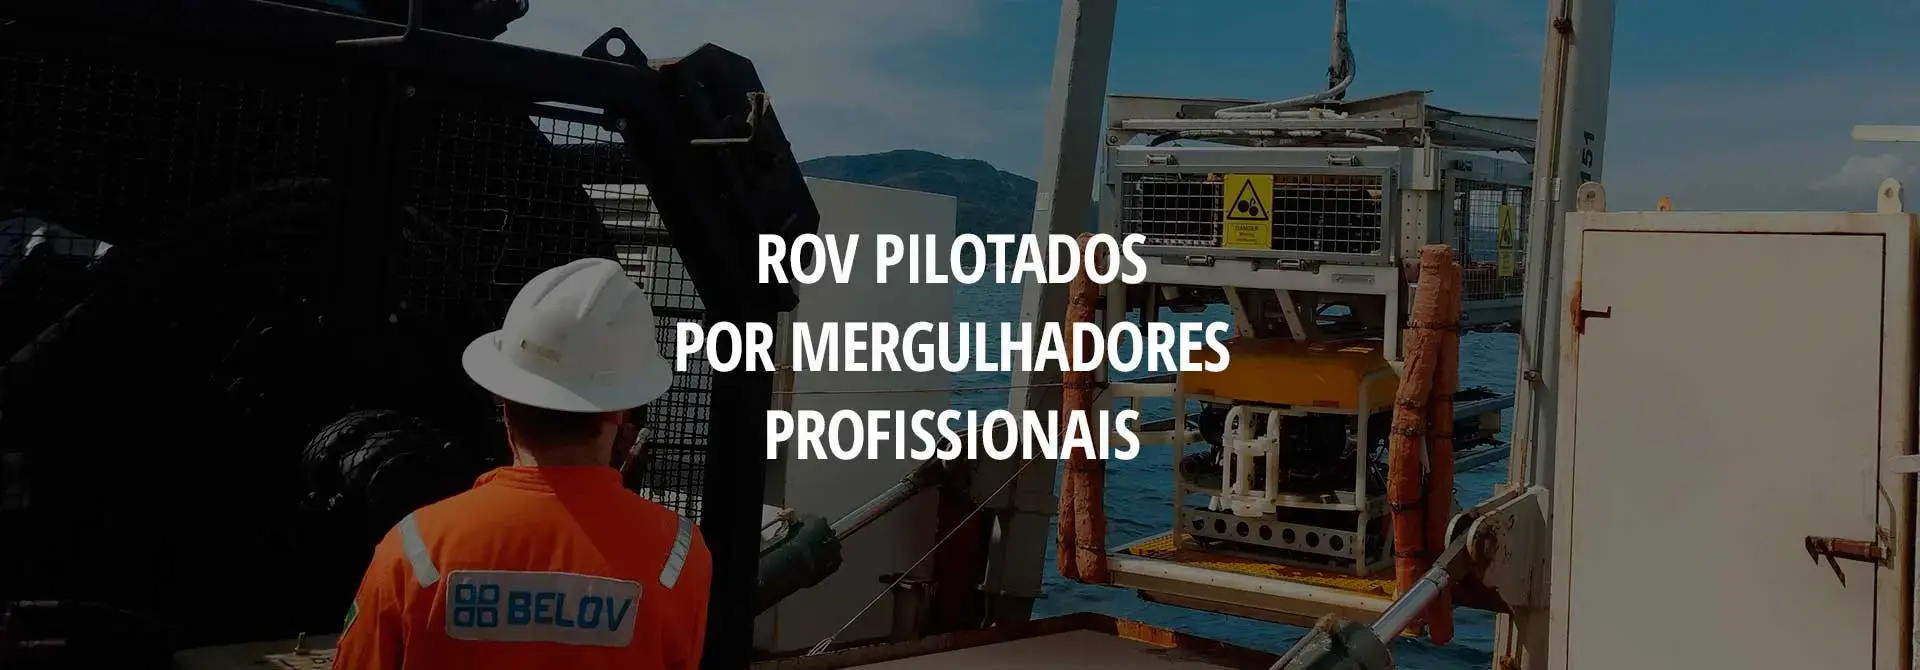 ROV pilotados por mergulhadores profissionais